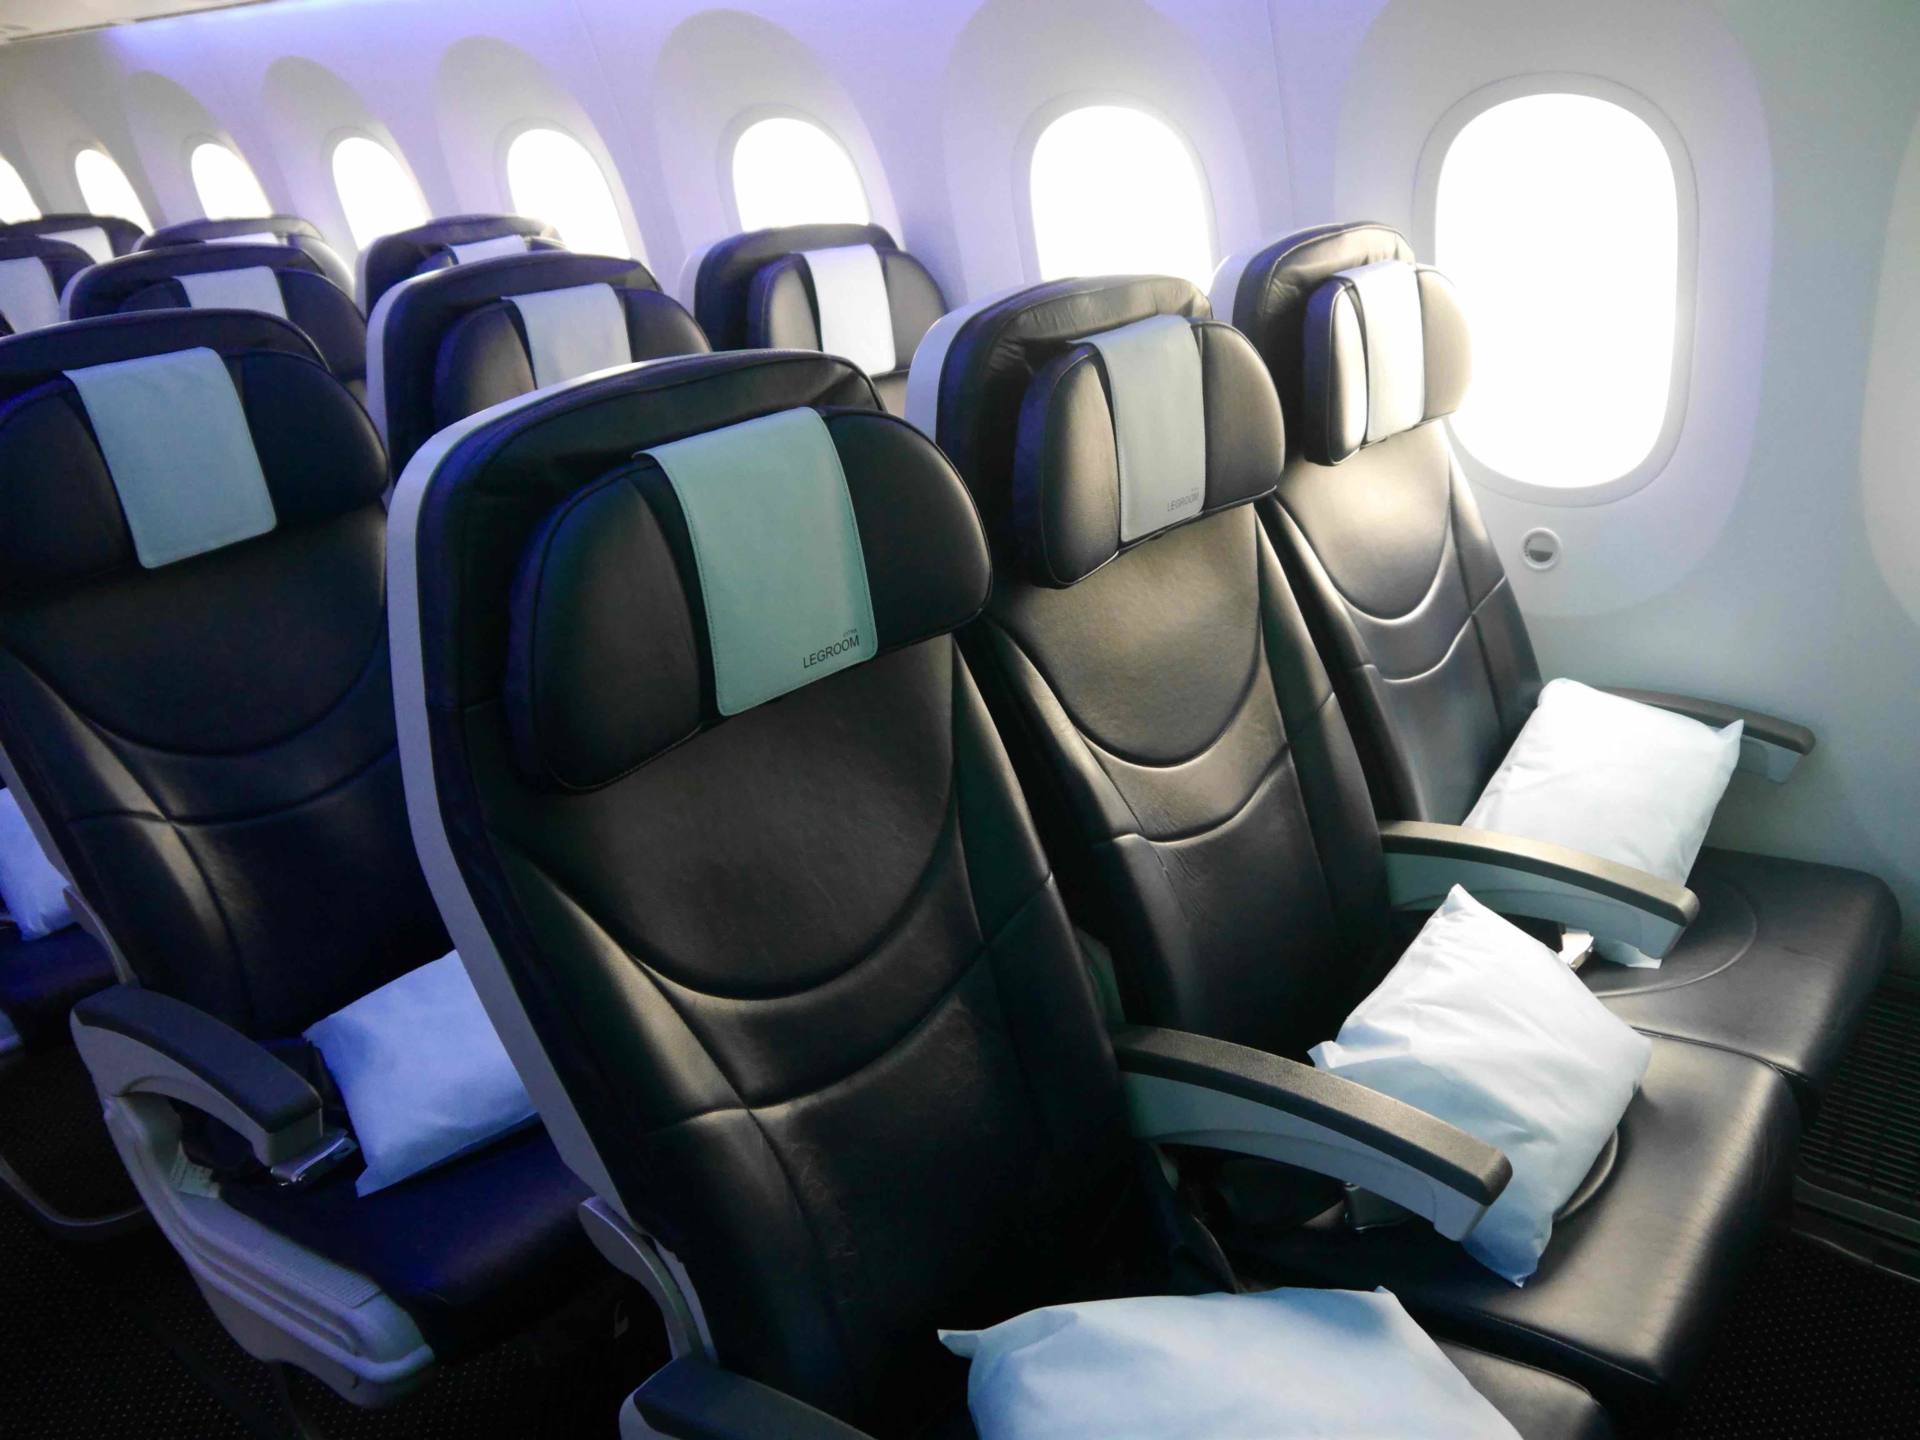 Duerma mejor mientras viaja al extranjero en el TUI dreamliner